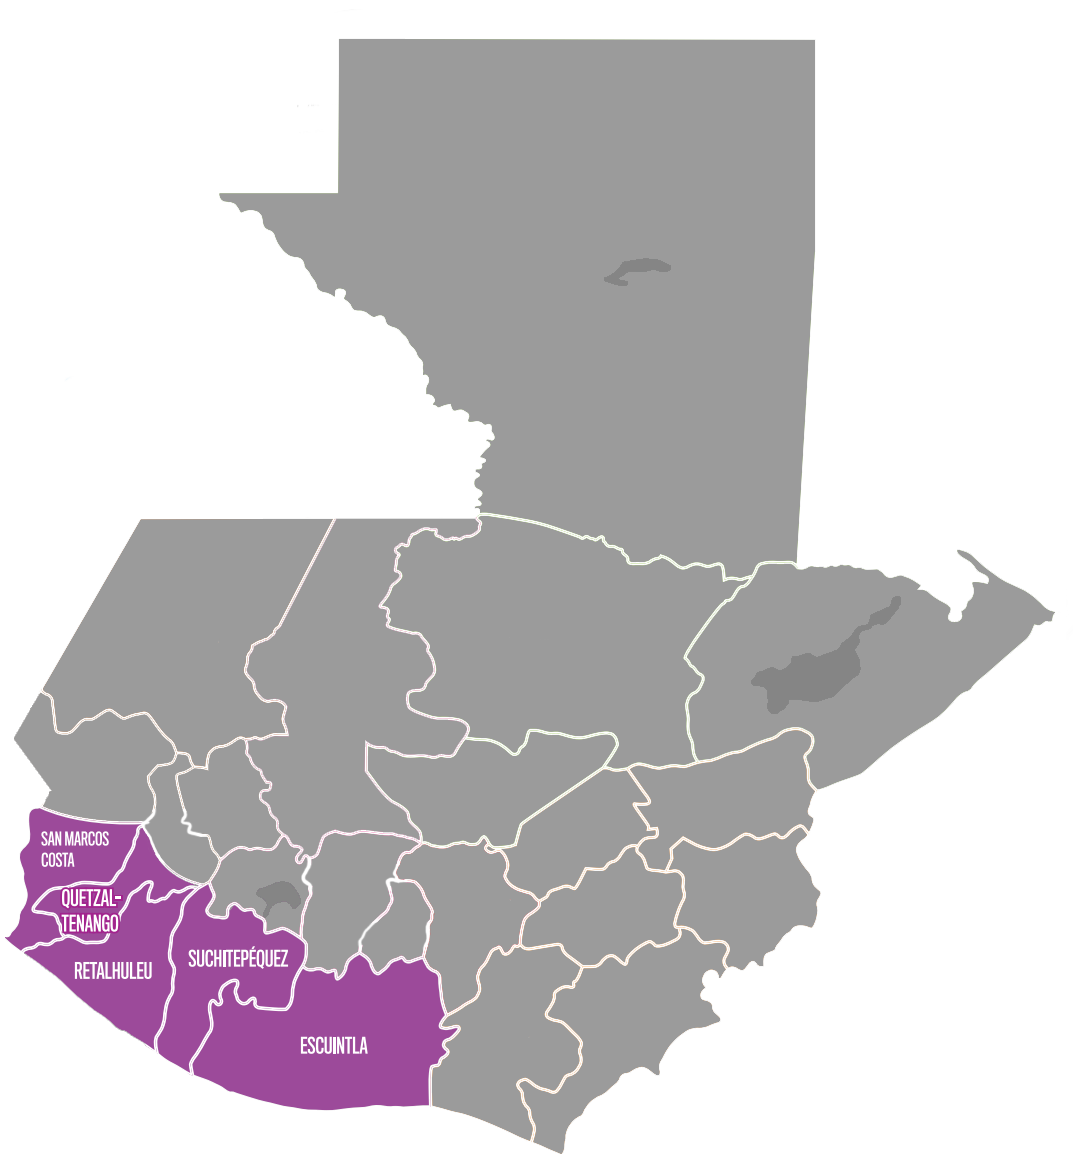 Escuintla, Suchitepequez, Retalhuleu, área sur de San Marcos y Quetzaltenango